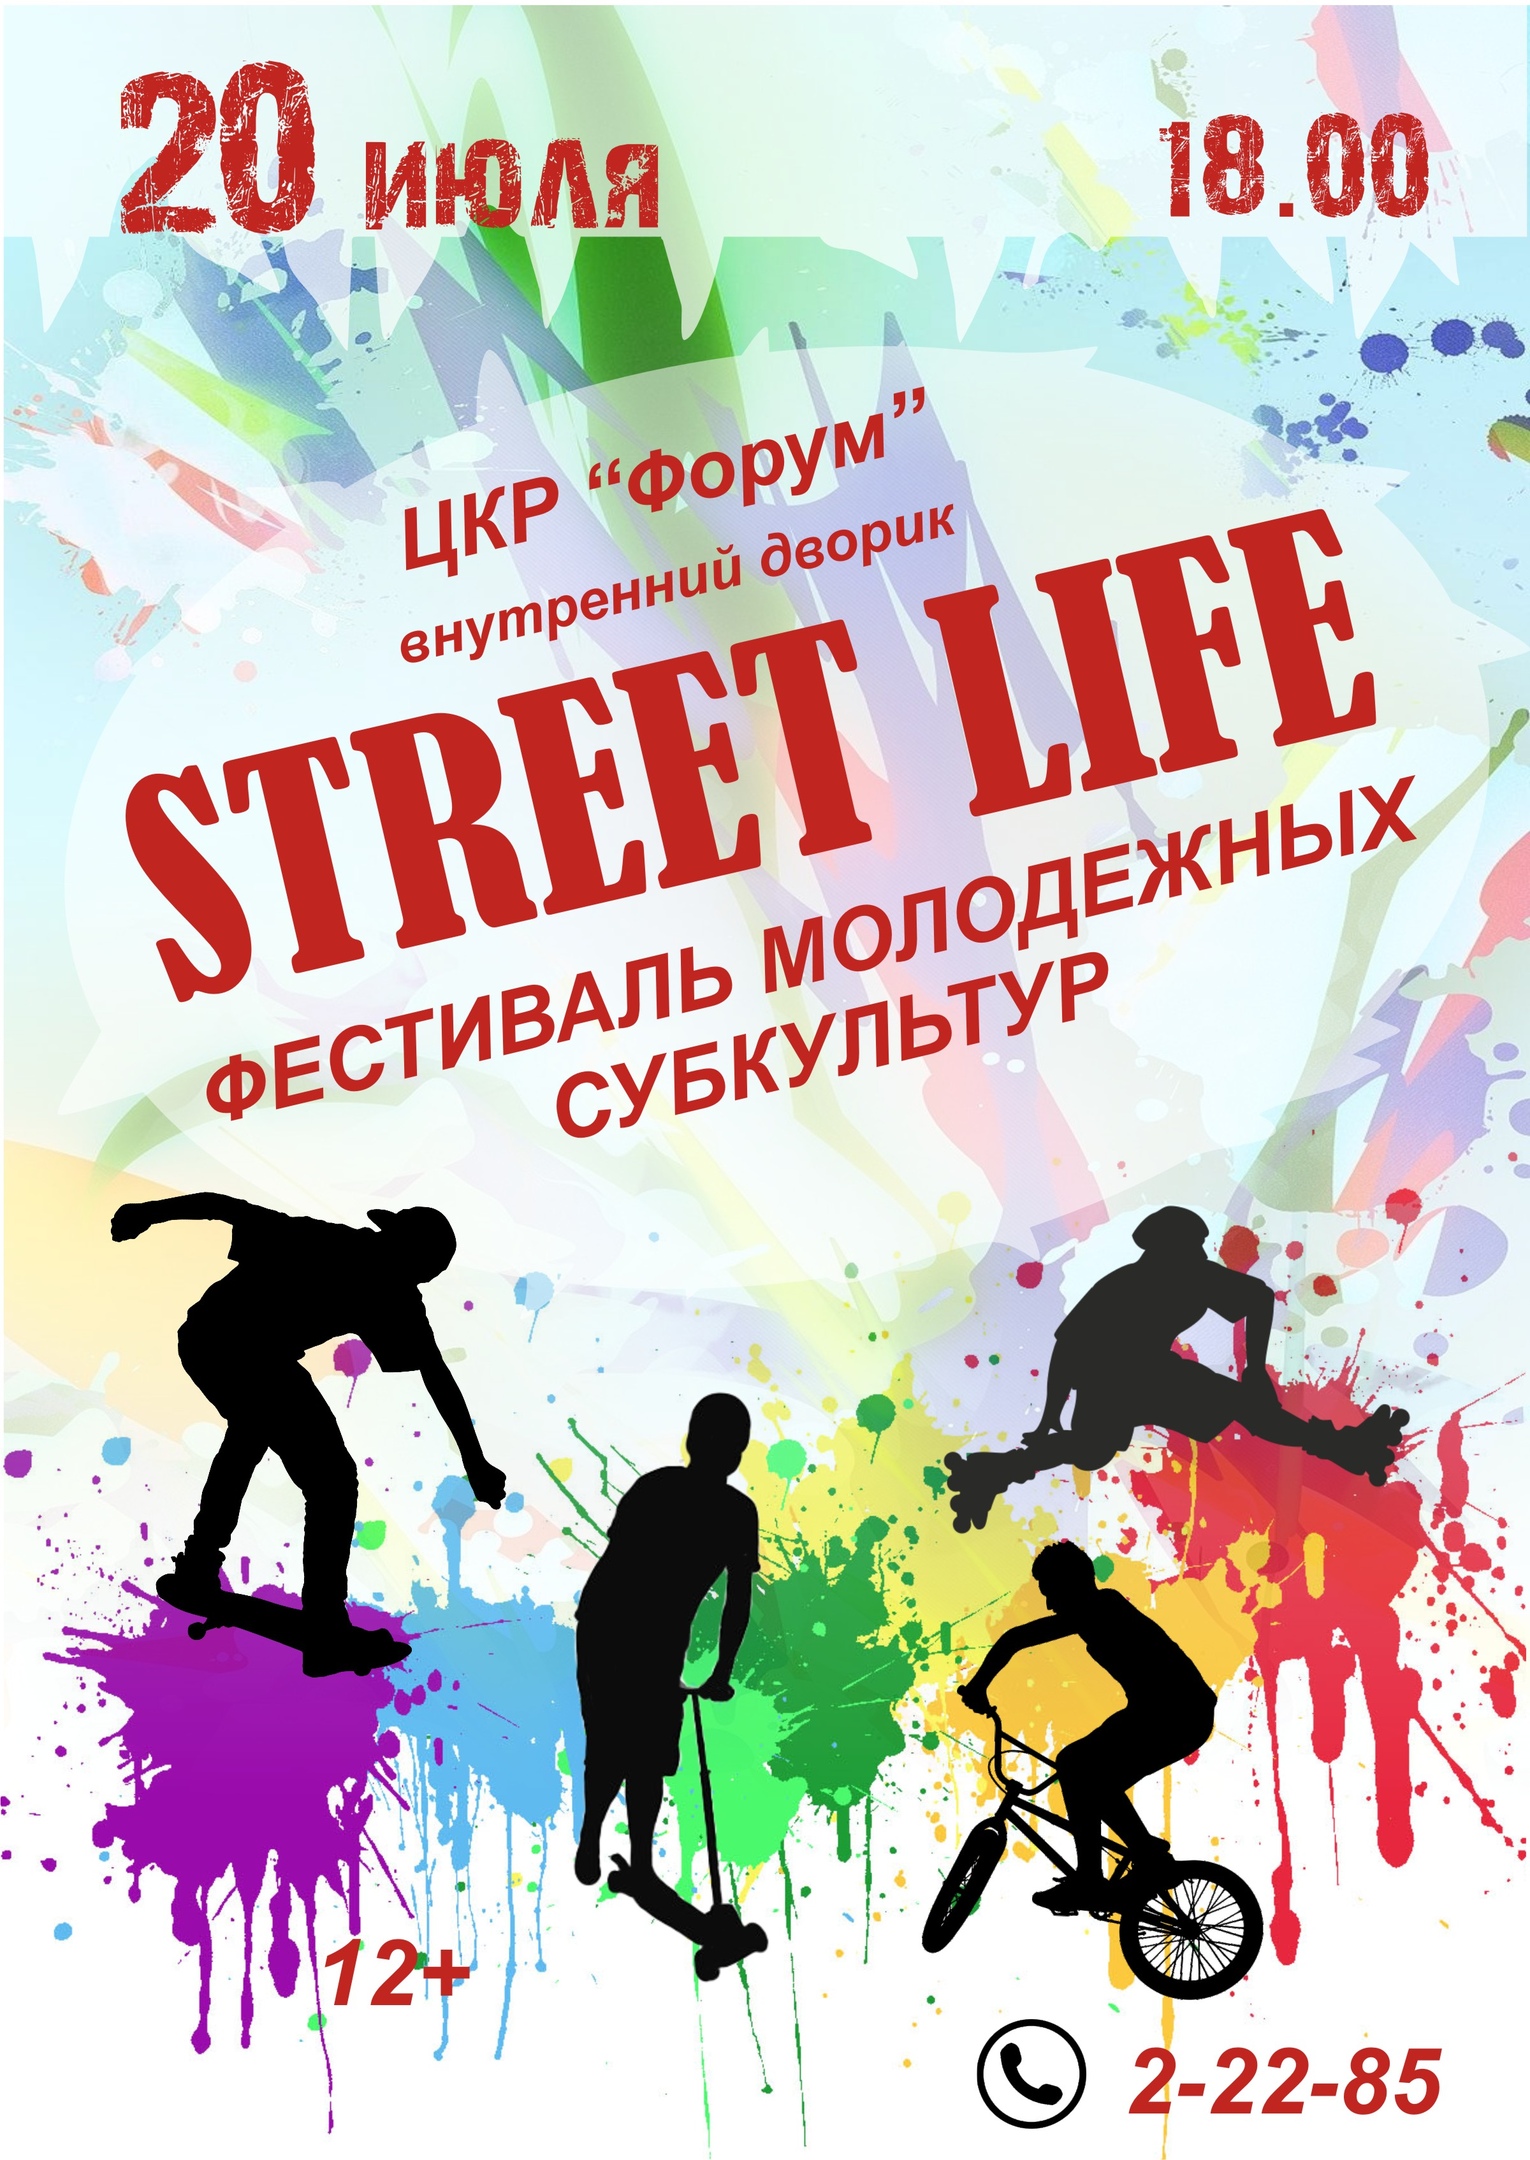 Фестиваль молодёжных субкультур "Street life"